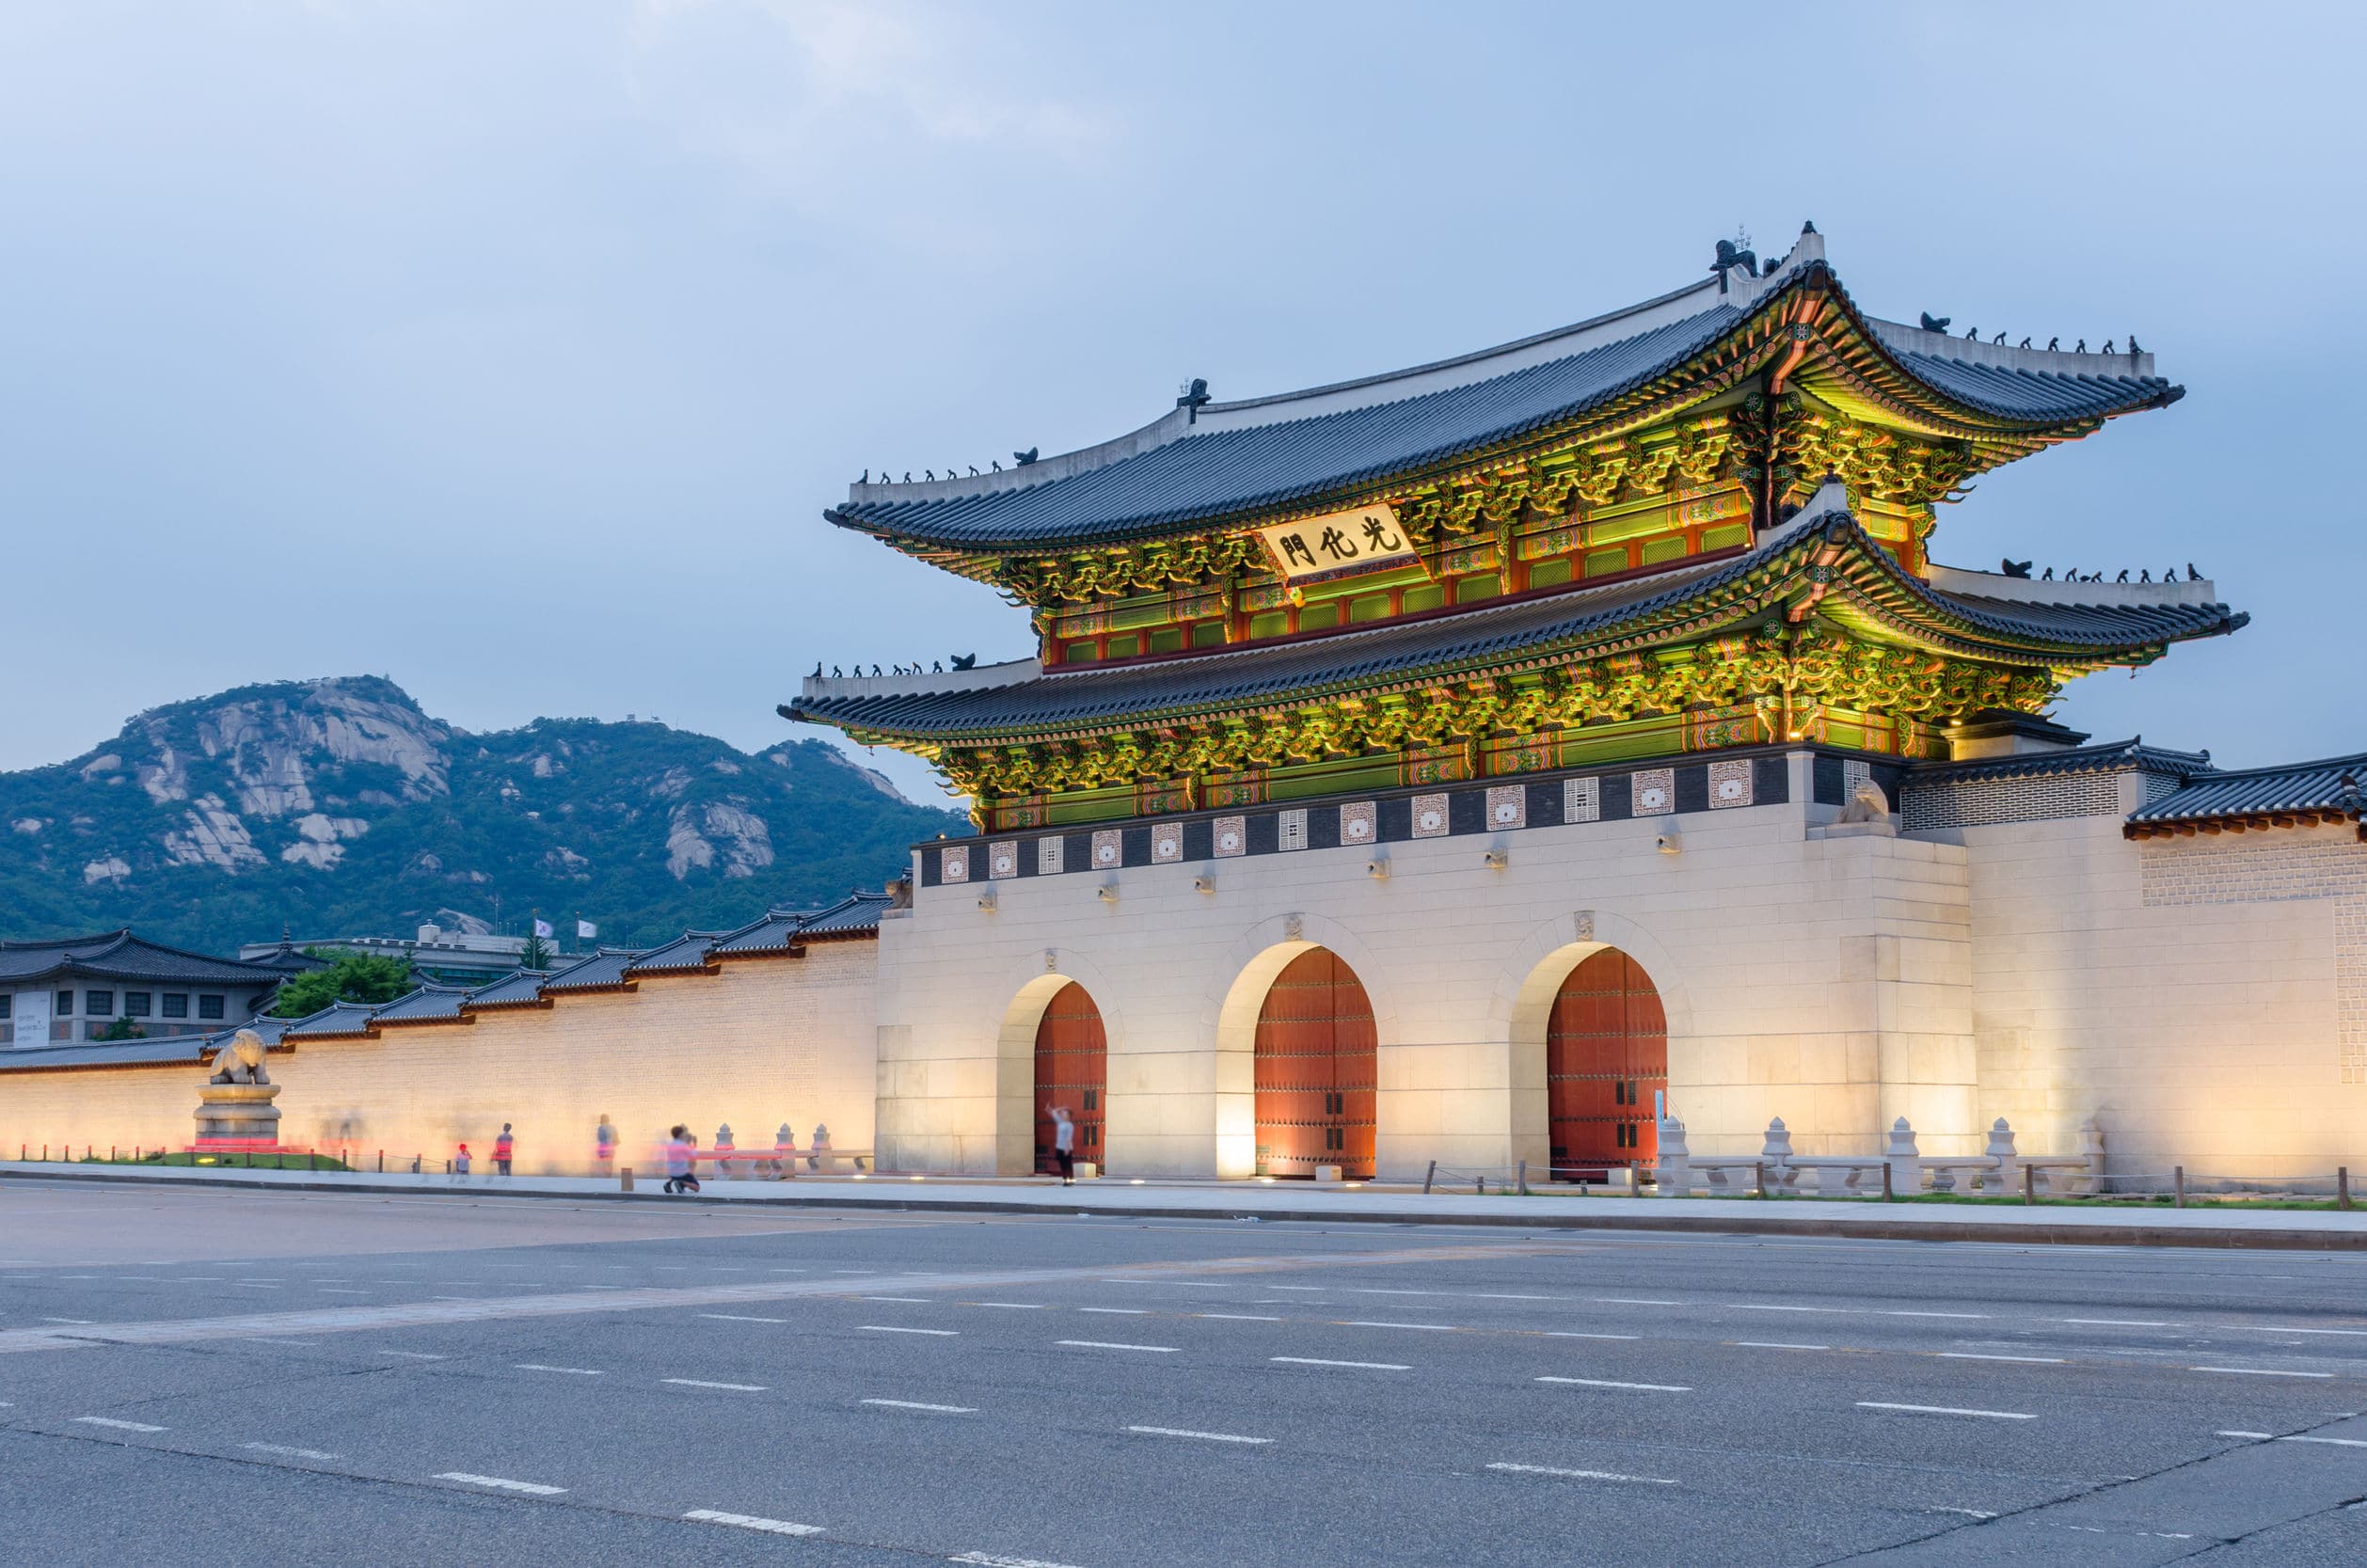 Gyeongbokgung palace at night in Seoul, South Korea